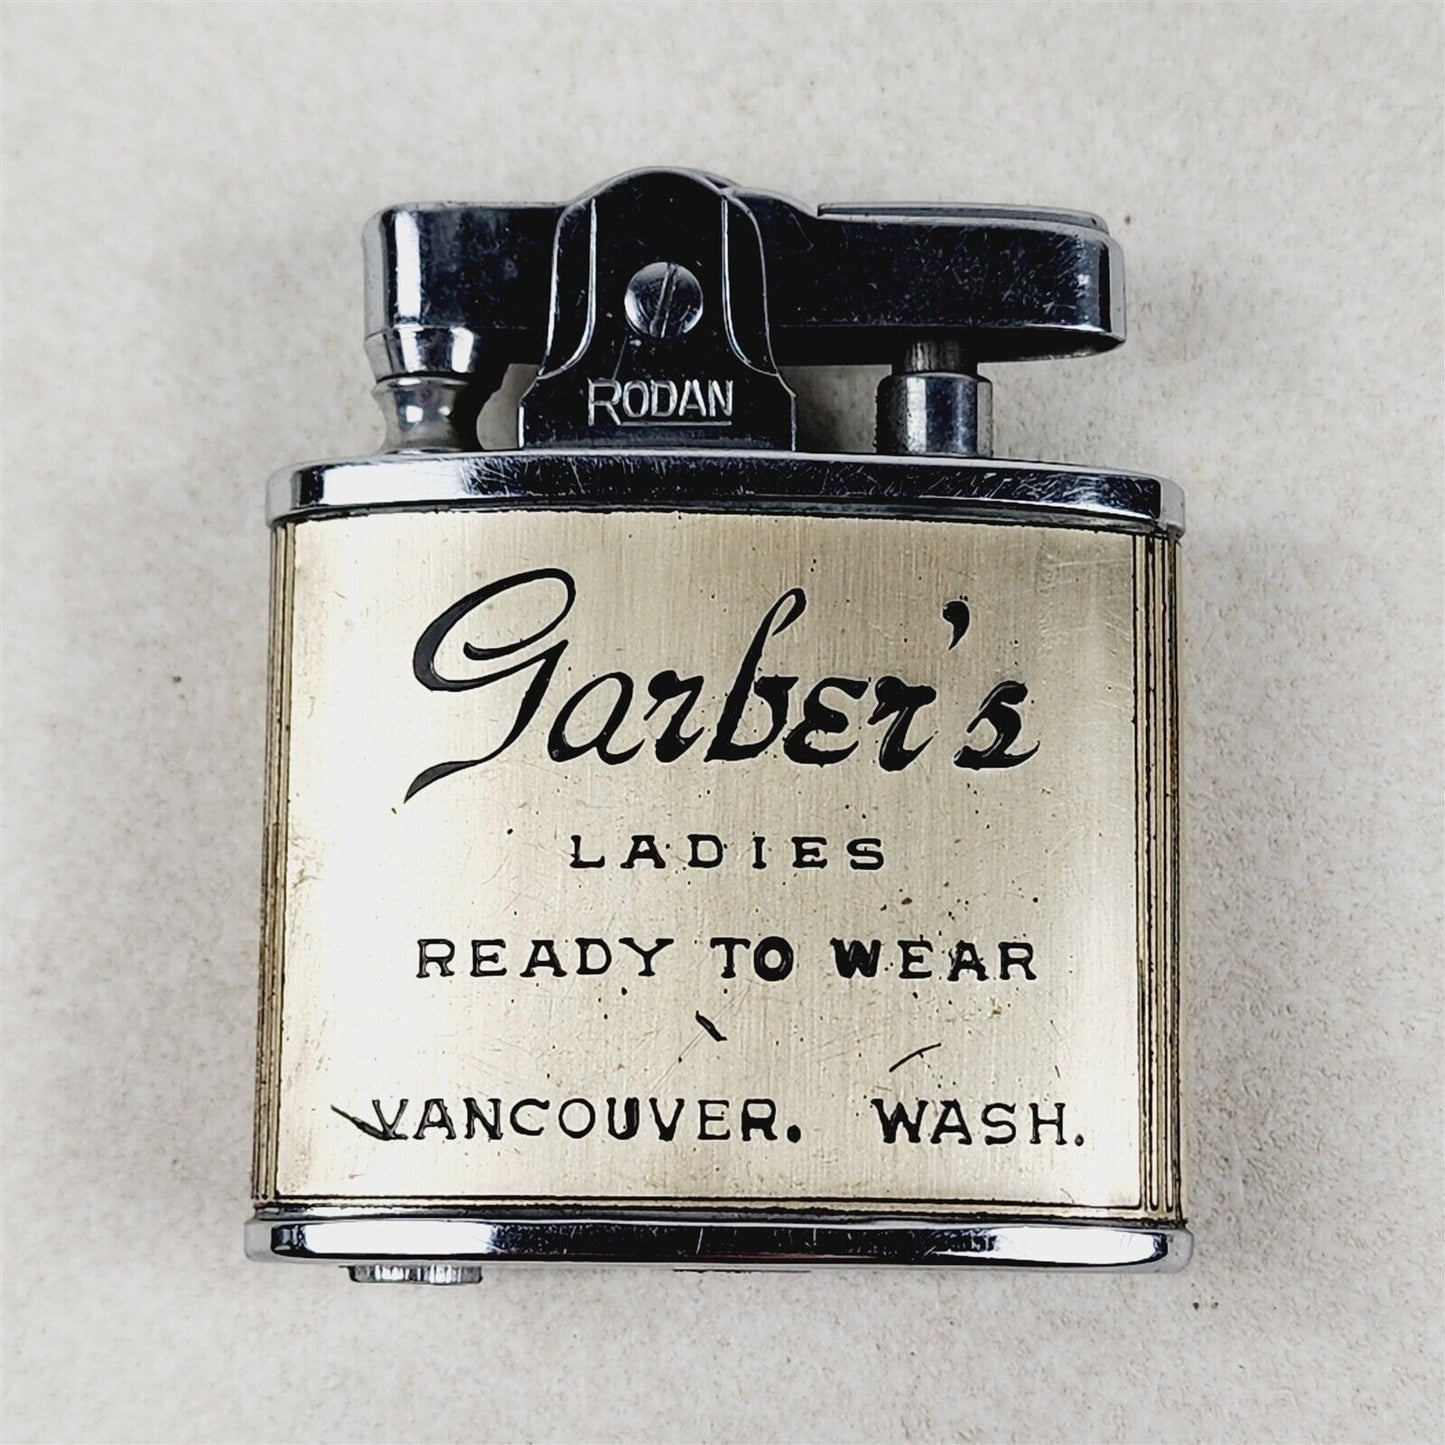 Vintage Rodan Lighter Advertising Garber's Ladies Read to Wear Vancouver WA